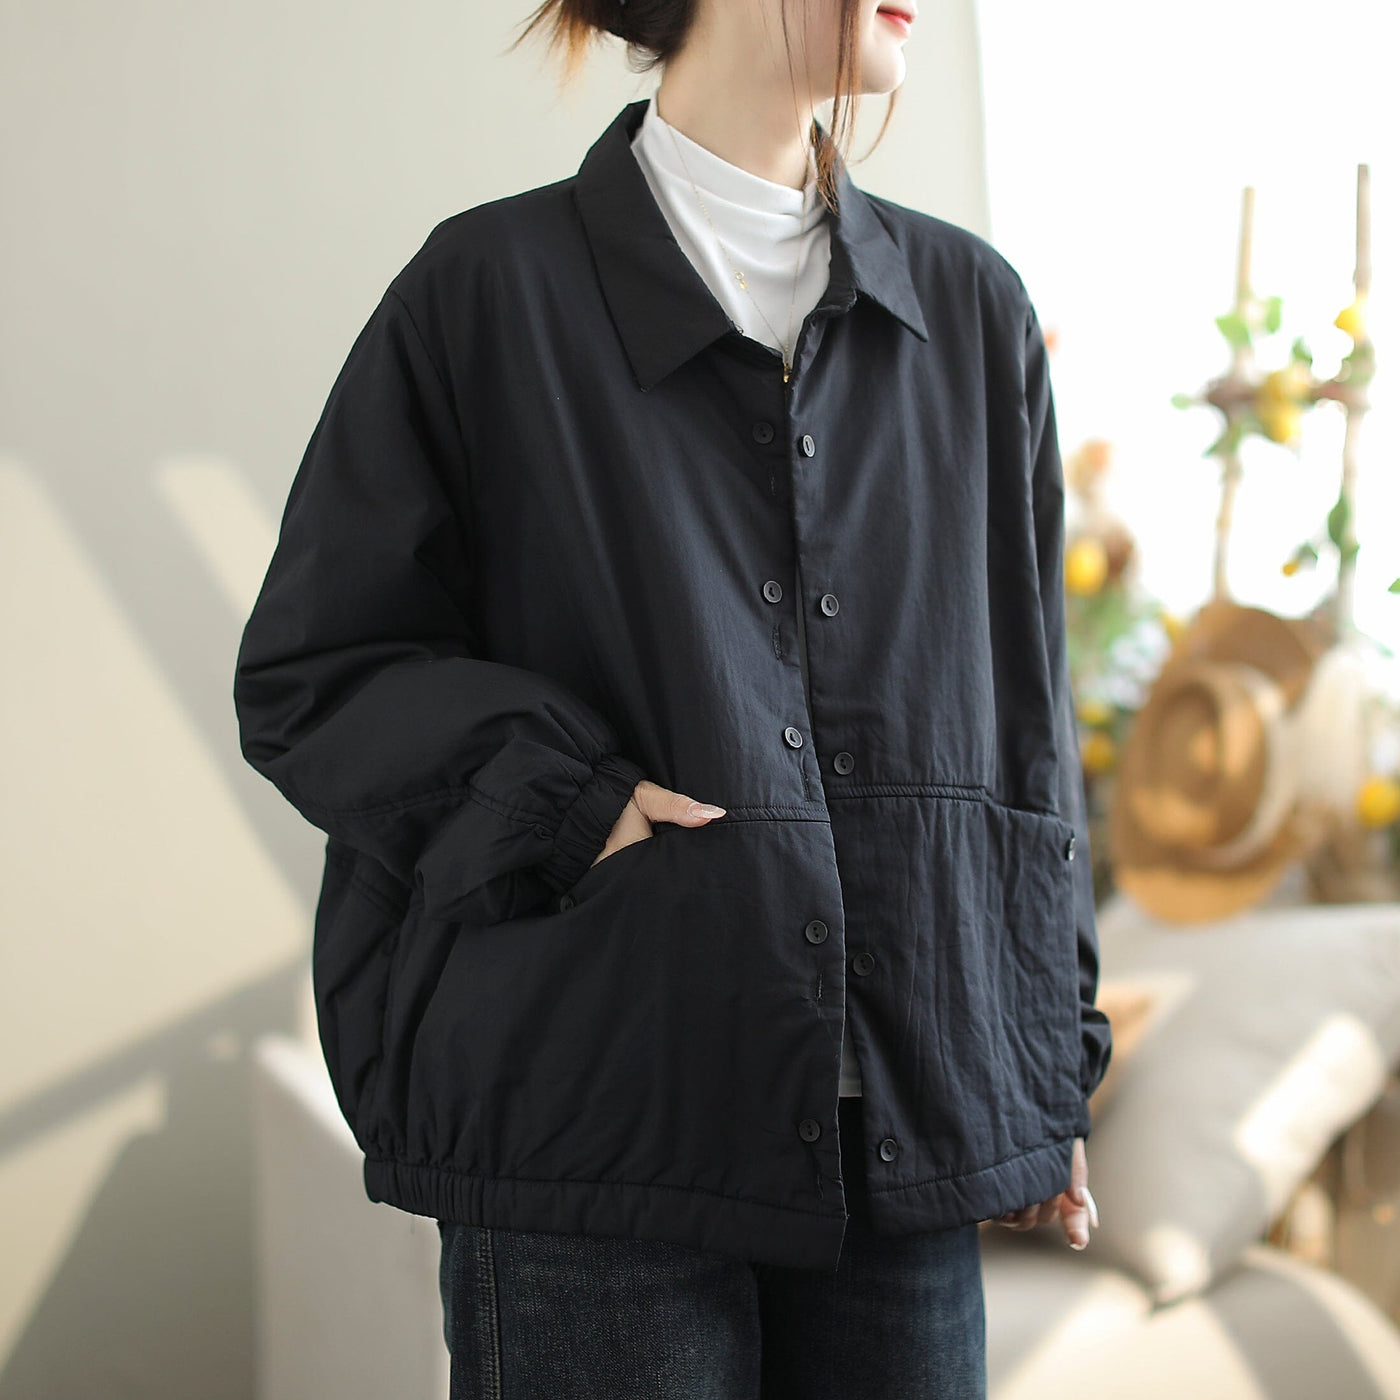 Women Minimalist Autumn Loose Casual Cotton Jacket